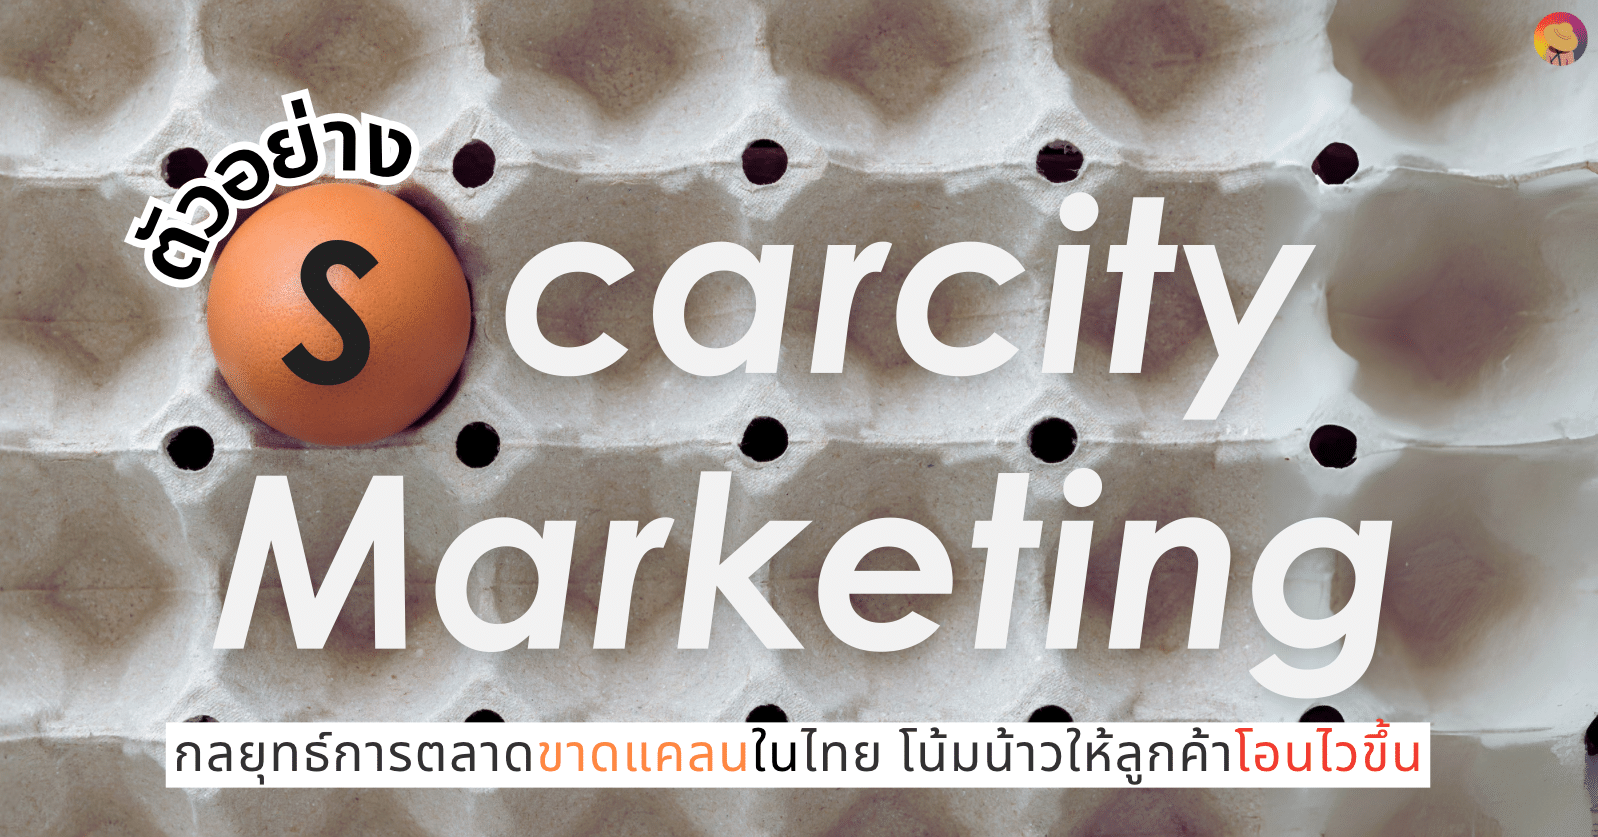 ตัวอย่าง Scarcity Marketing ในไทย ทำให้ลูกค้าโอนไว กระตุ้น Demand